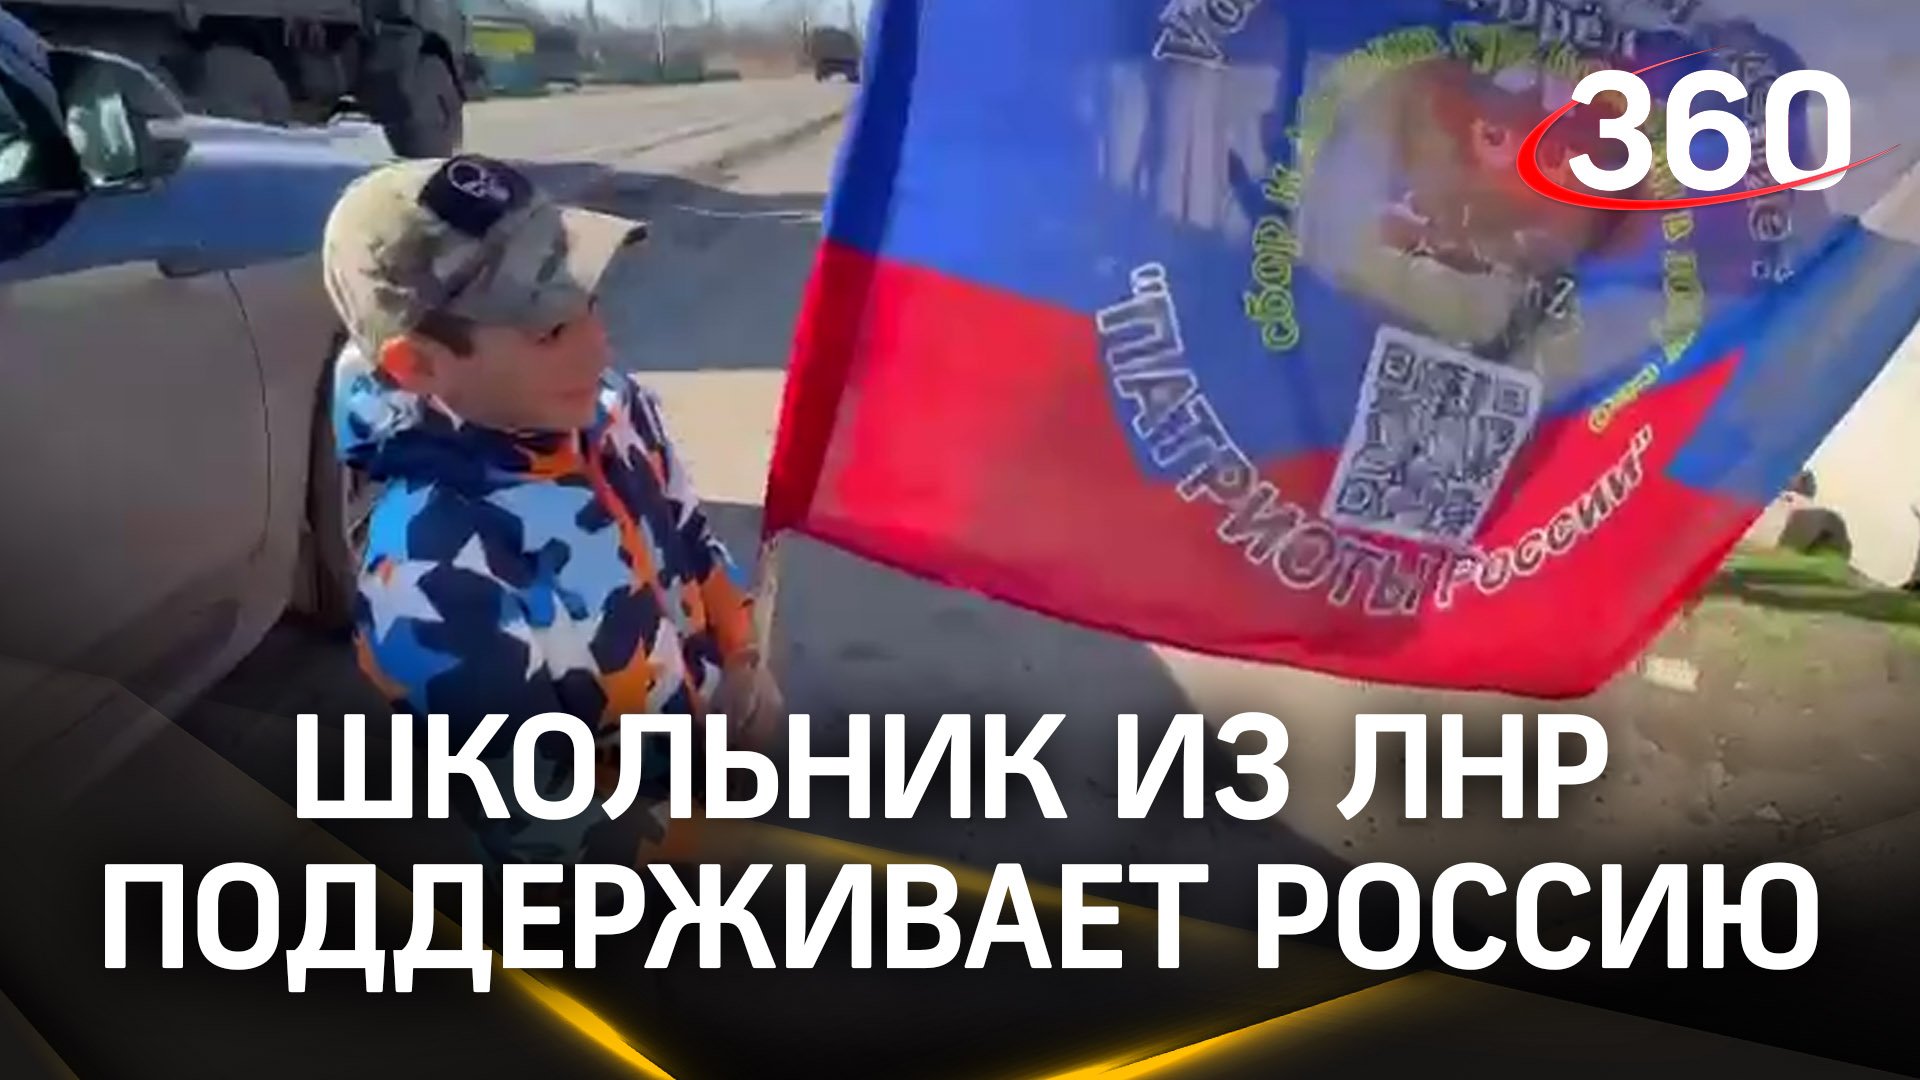 «Поддерживаю Россию!»: маленький Богдан каждый день выходит на мини-митинг в ЛНР